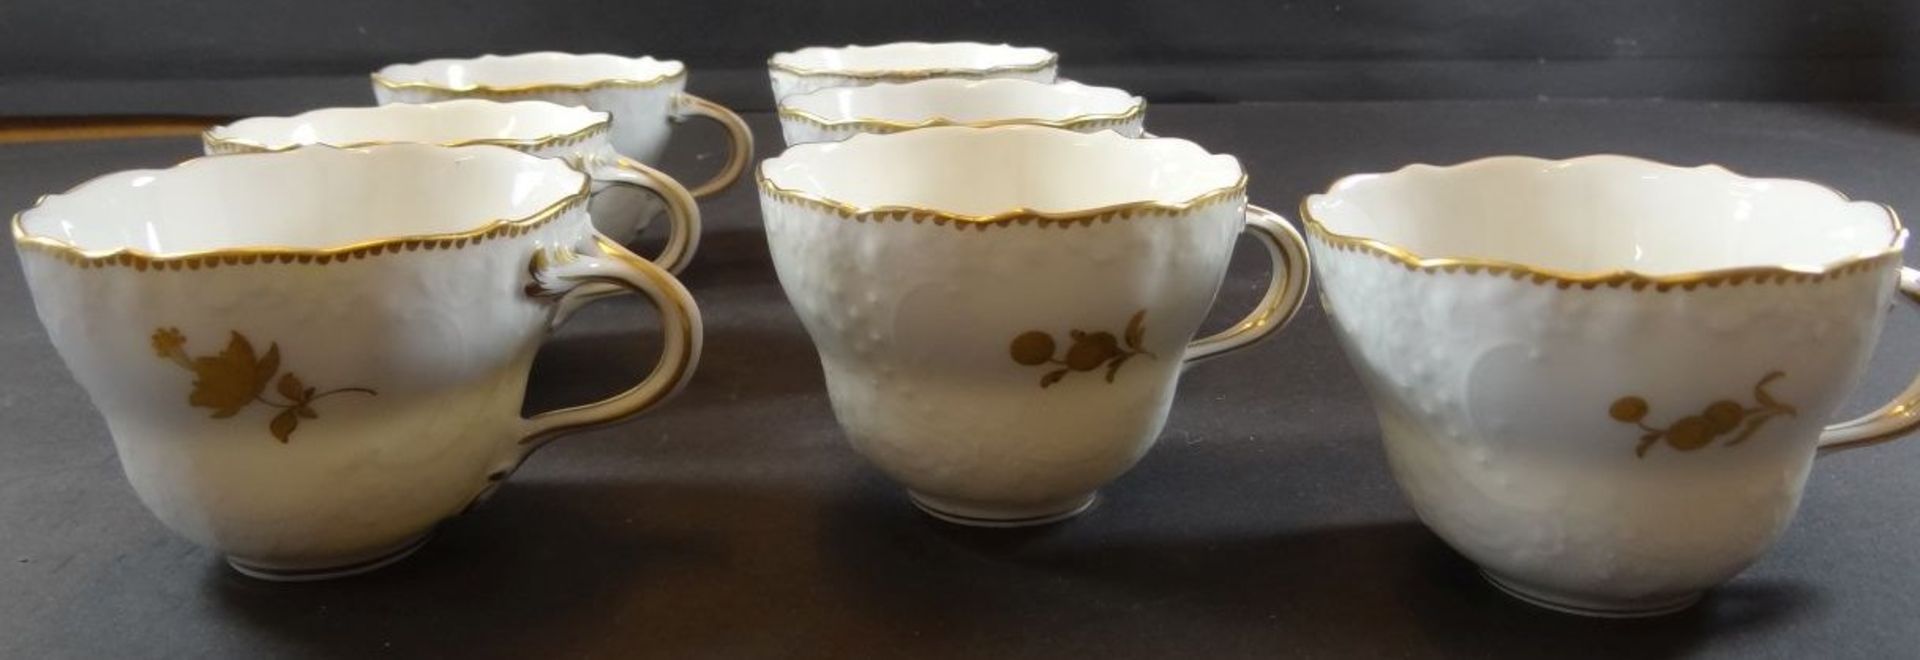 7 Kaffeegedecke "Meissen" Goldblumen, 21 Teile, 1 Tasse mit Klebestelle, - Bild 9 aus 12